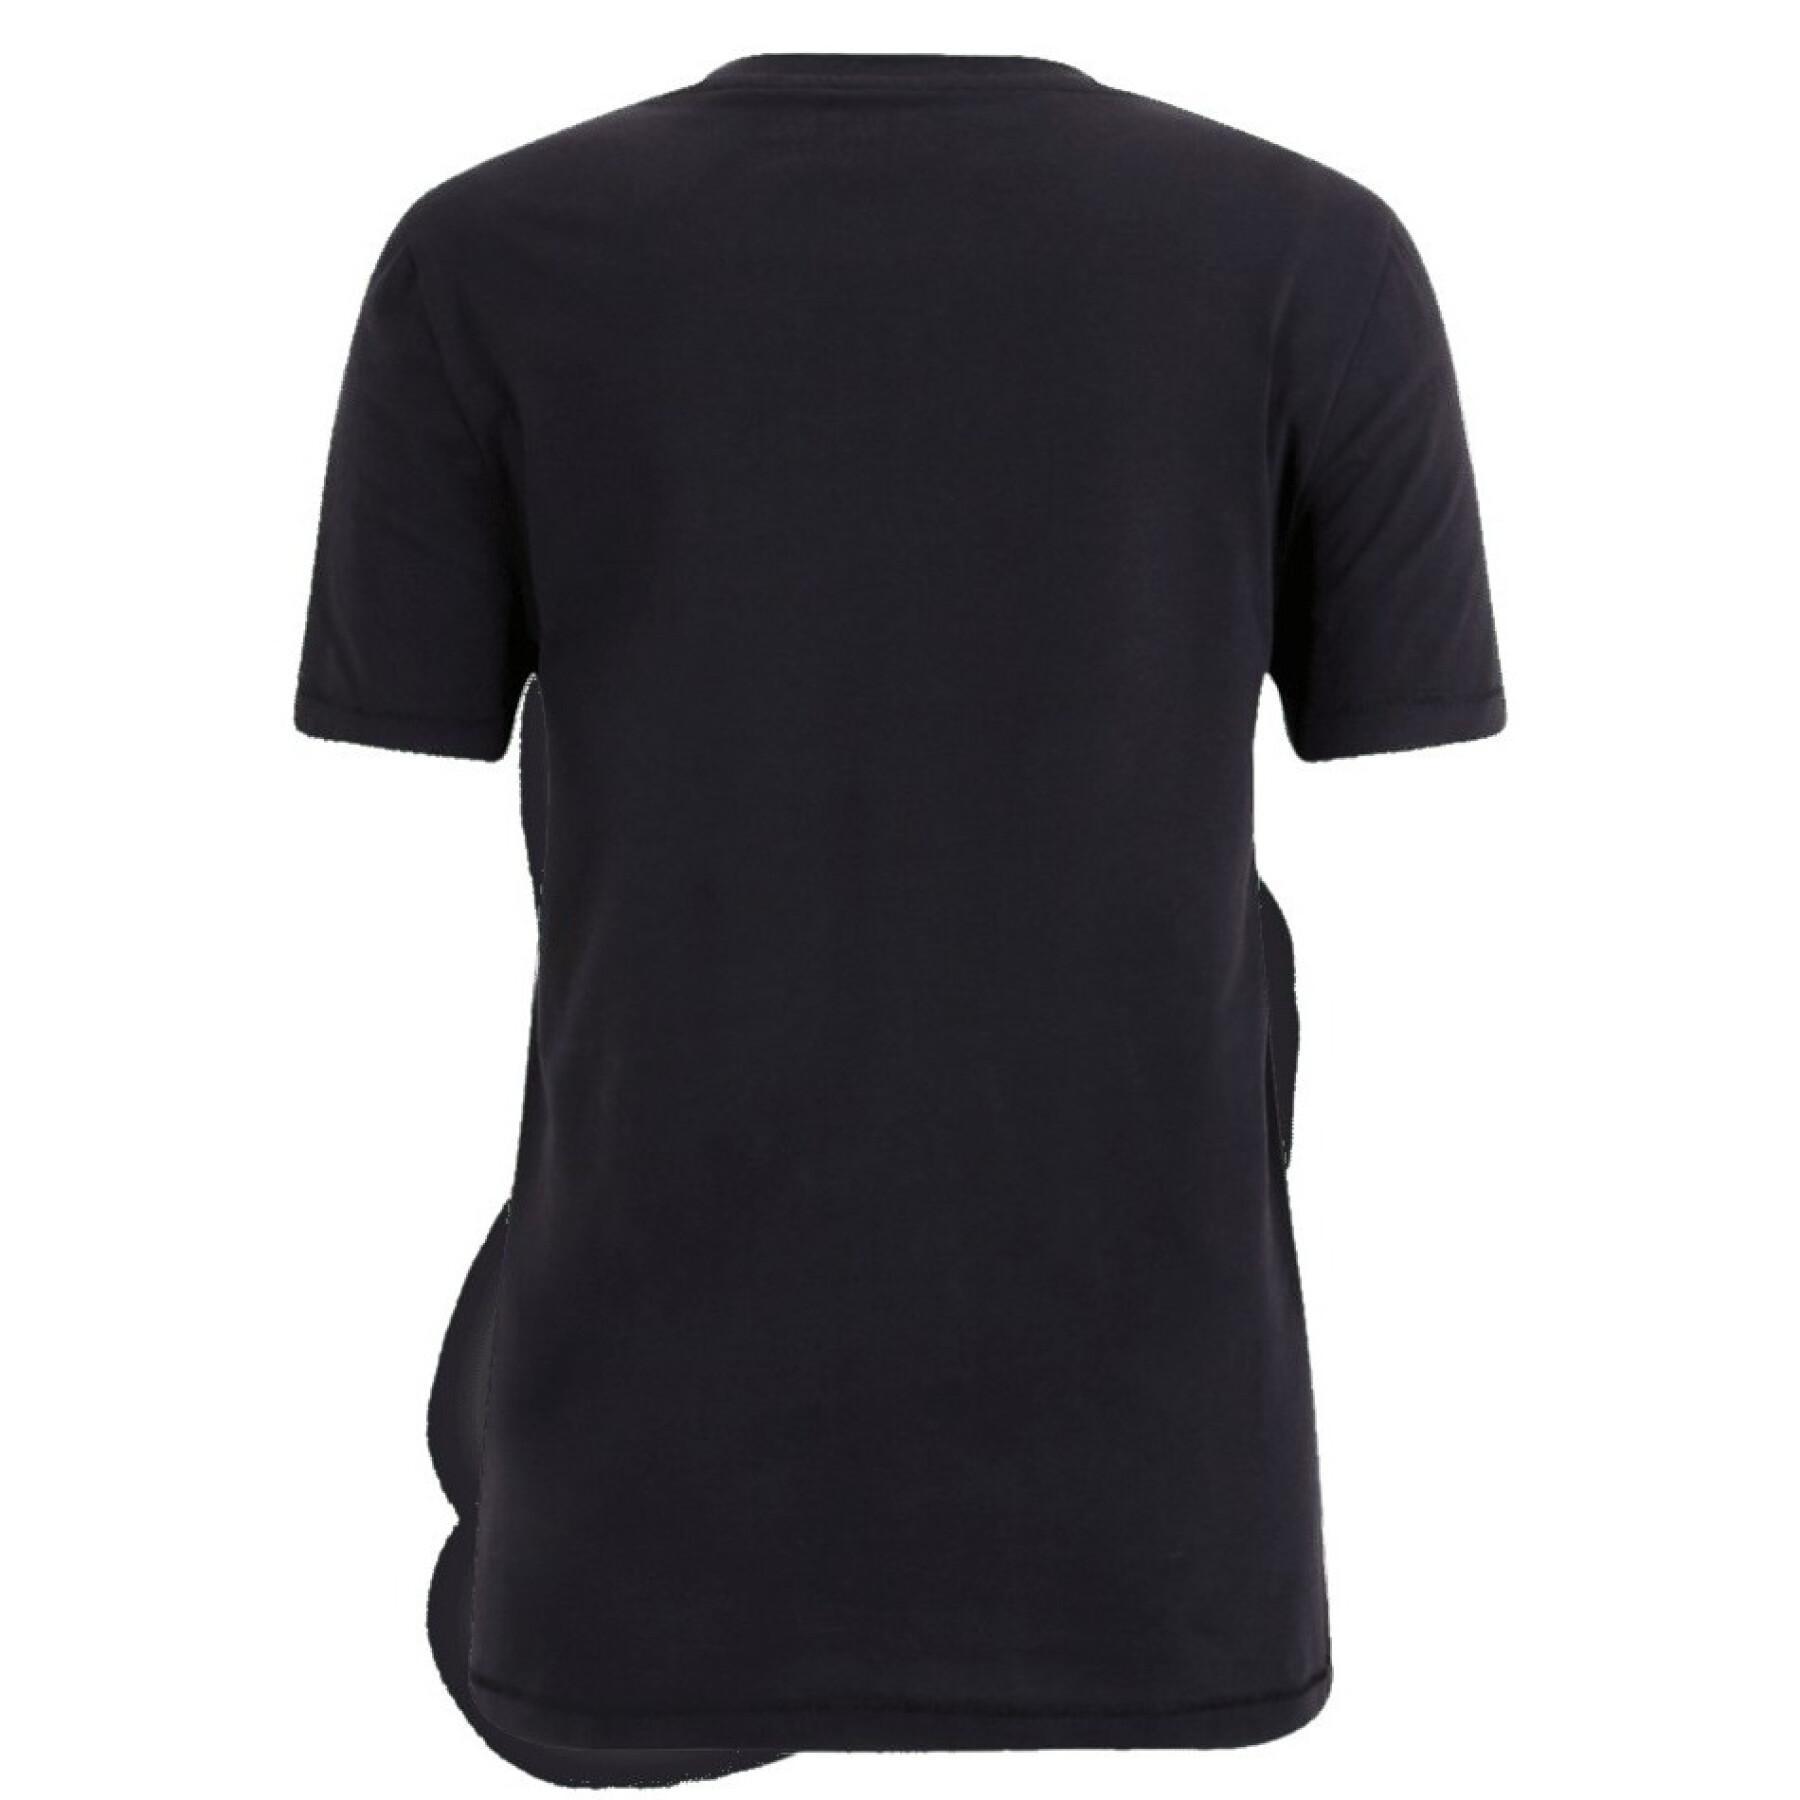 T-Shirts T- und mit Aalen - Shirts Tops Tamaris T-Shirt - Damen Rundhalsausschnitt, Bekleidung -